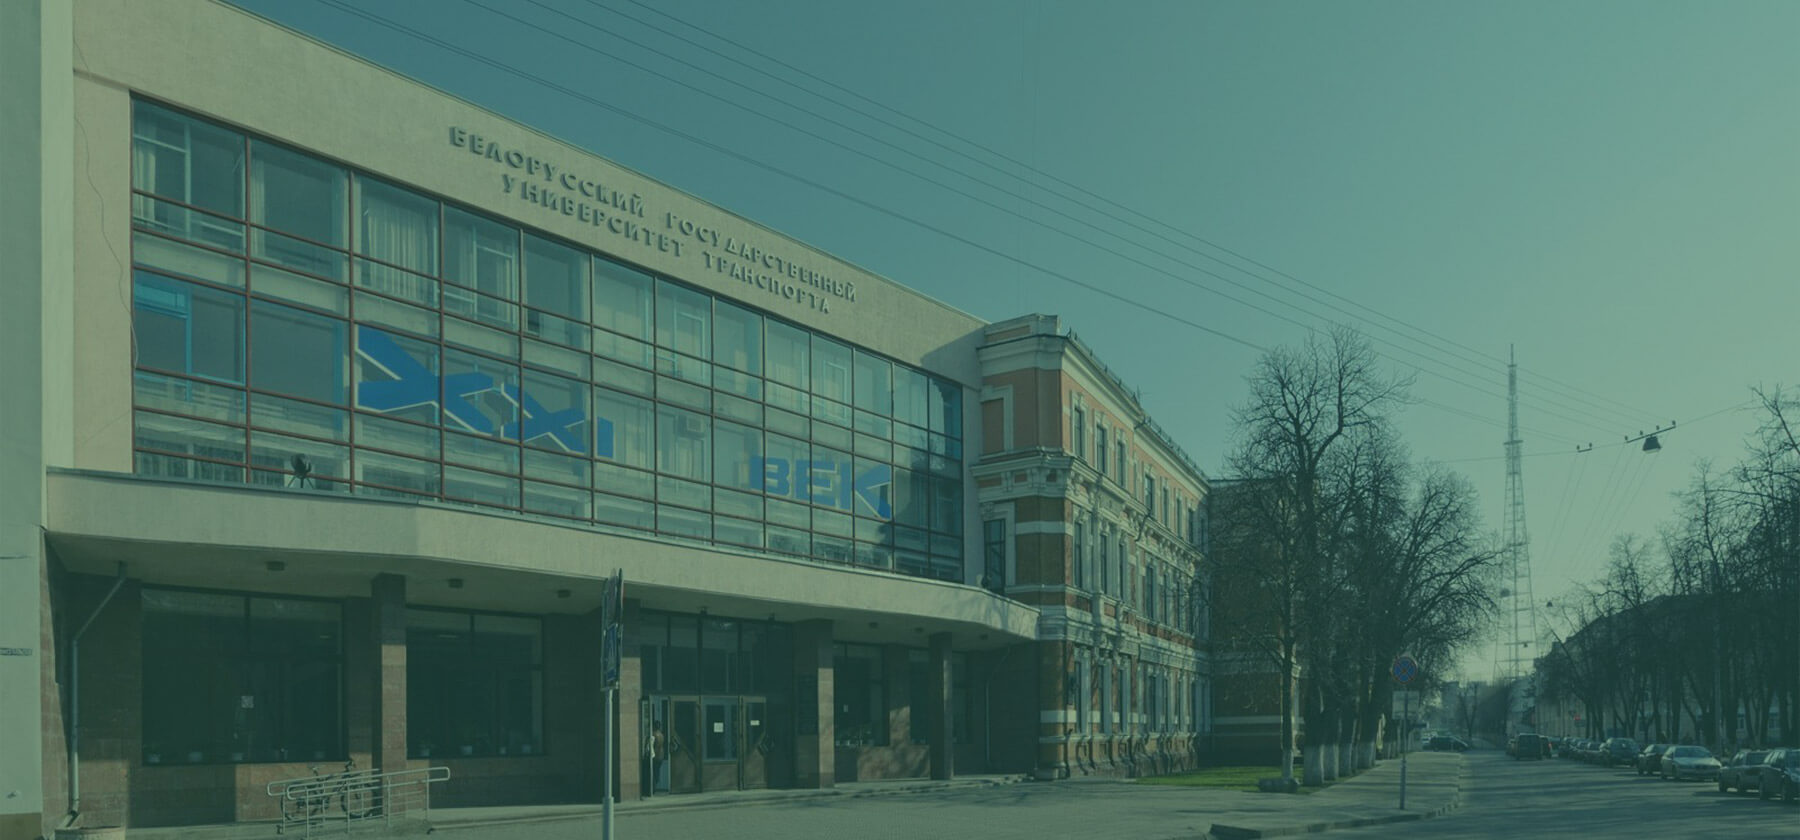 Военно-транспортный факультет в
												учреждении образования «Белорусский государственный университет транспорта»